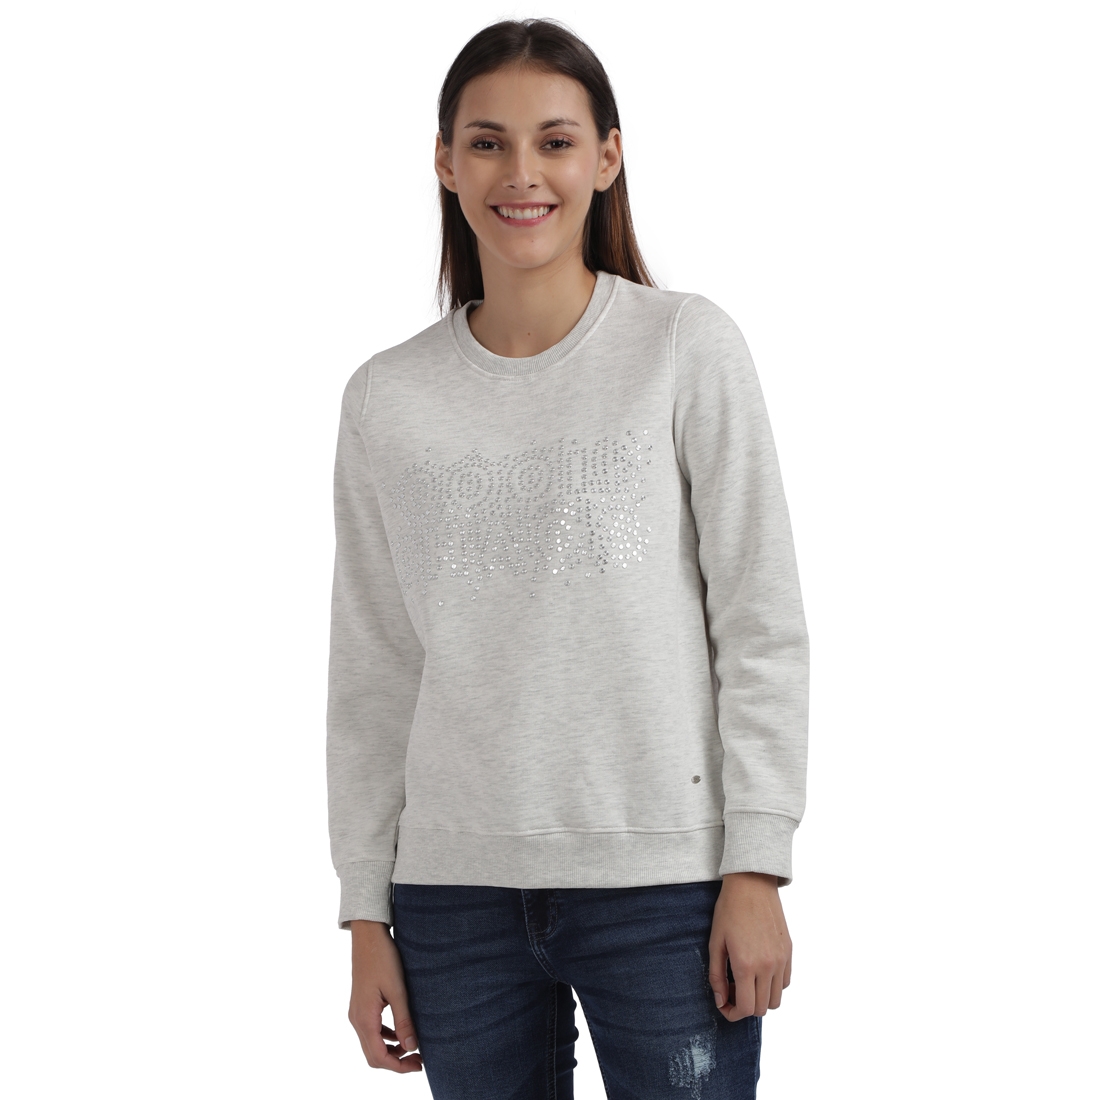 Parx Woman | Parx Woman White Sweatshirt 0